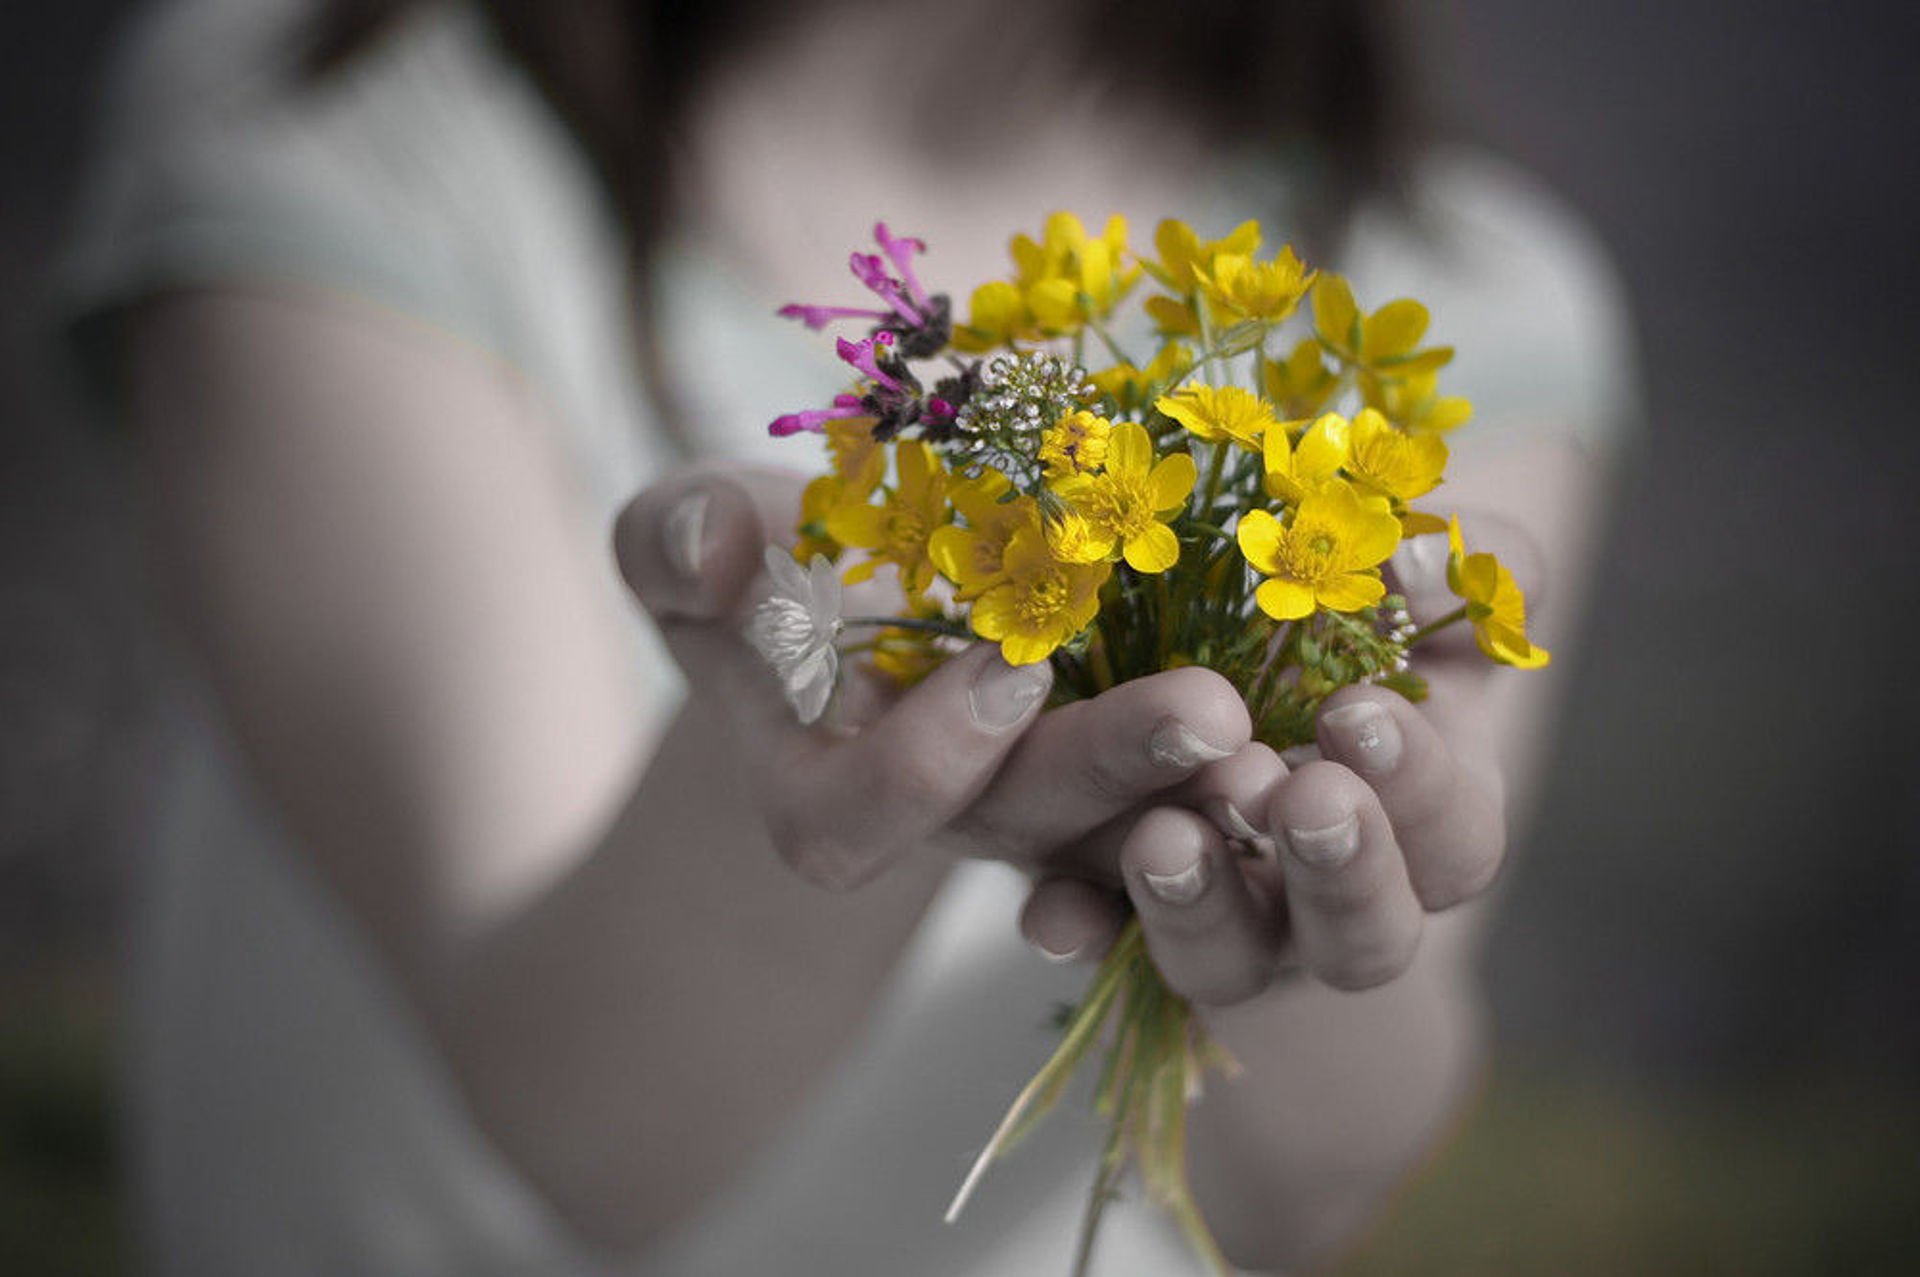 Все на свете жить должны. Цветы в ладонях. Цветы радости. Цветы радости жизни. Счастье в руках.